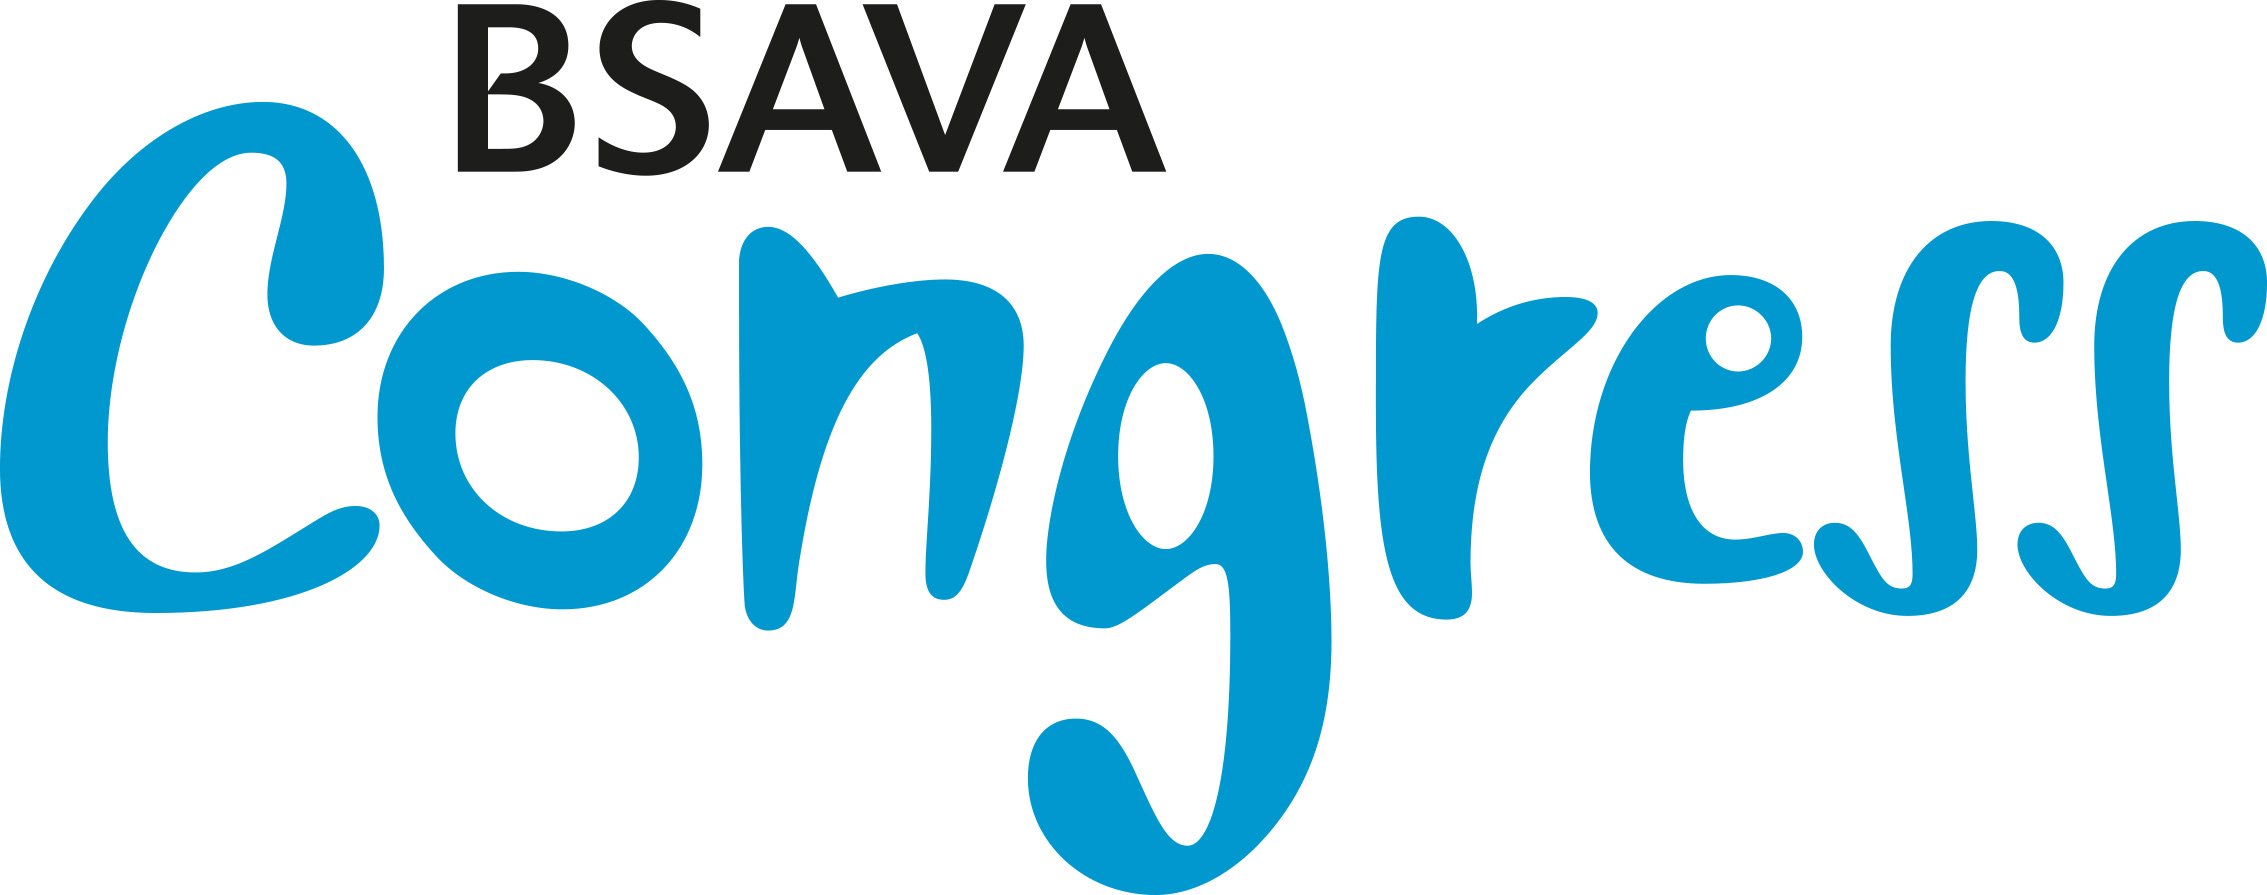 BSAVA Congress